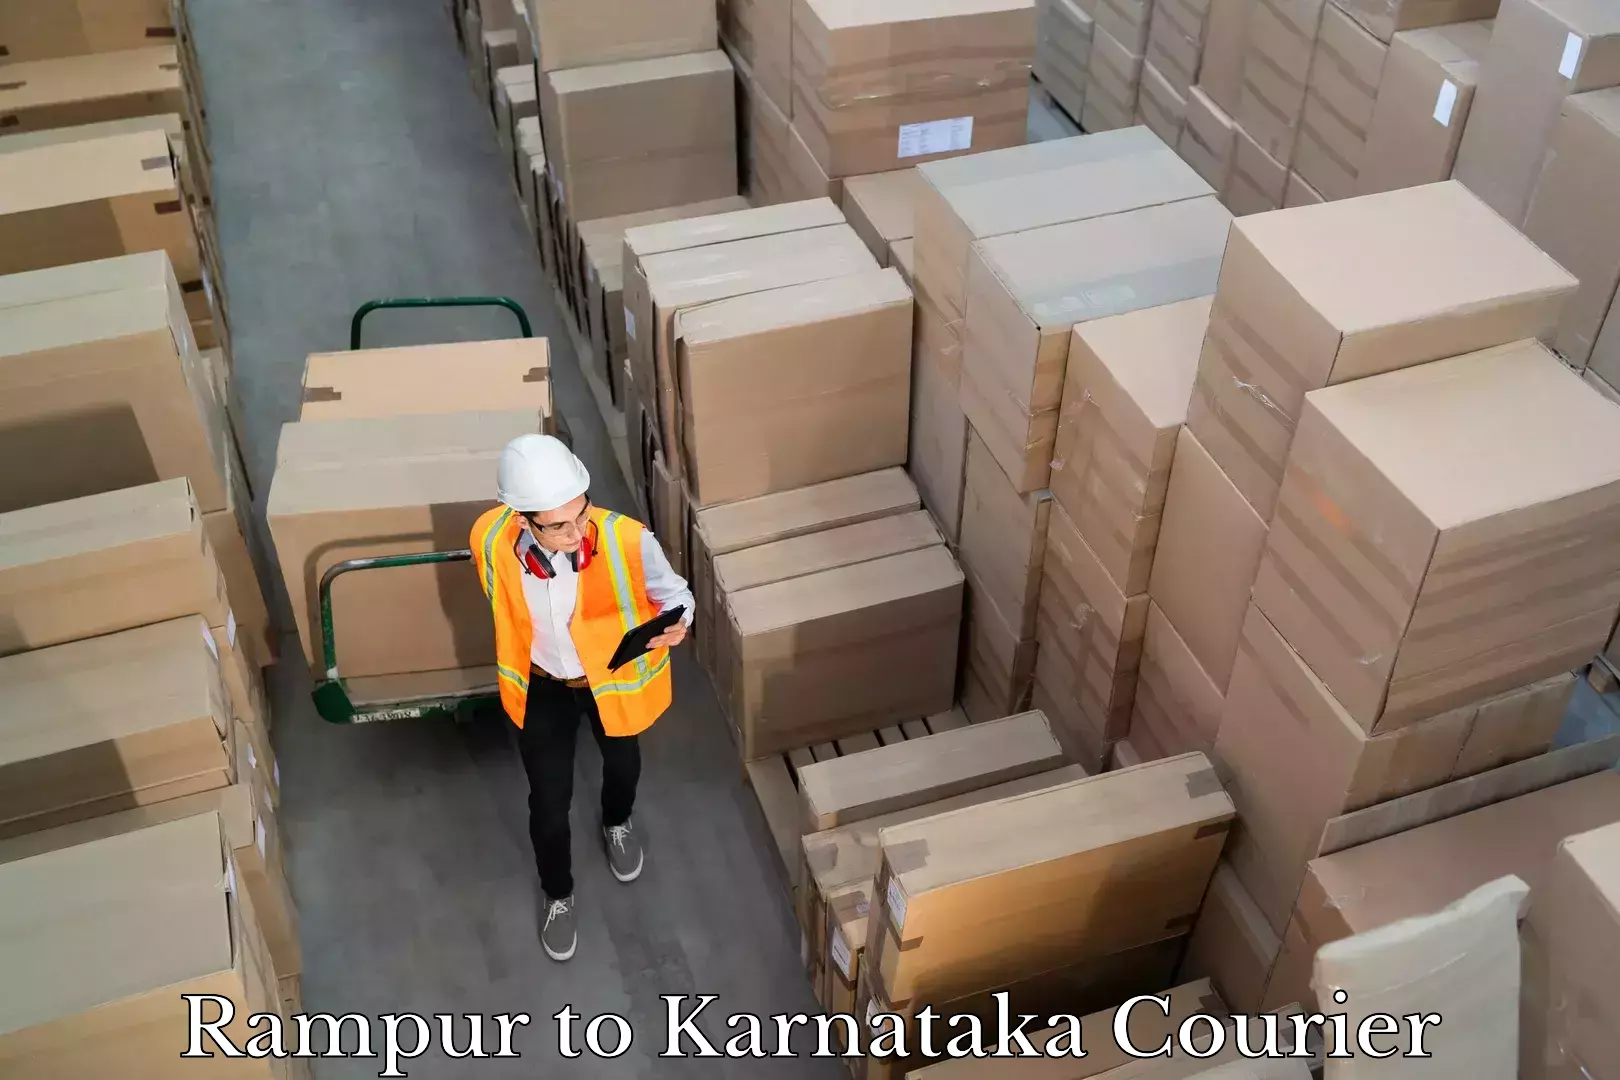 Expedited shipping methods Rampur to Karnataka